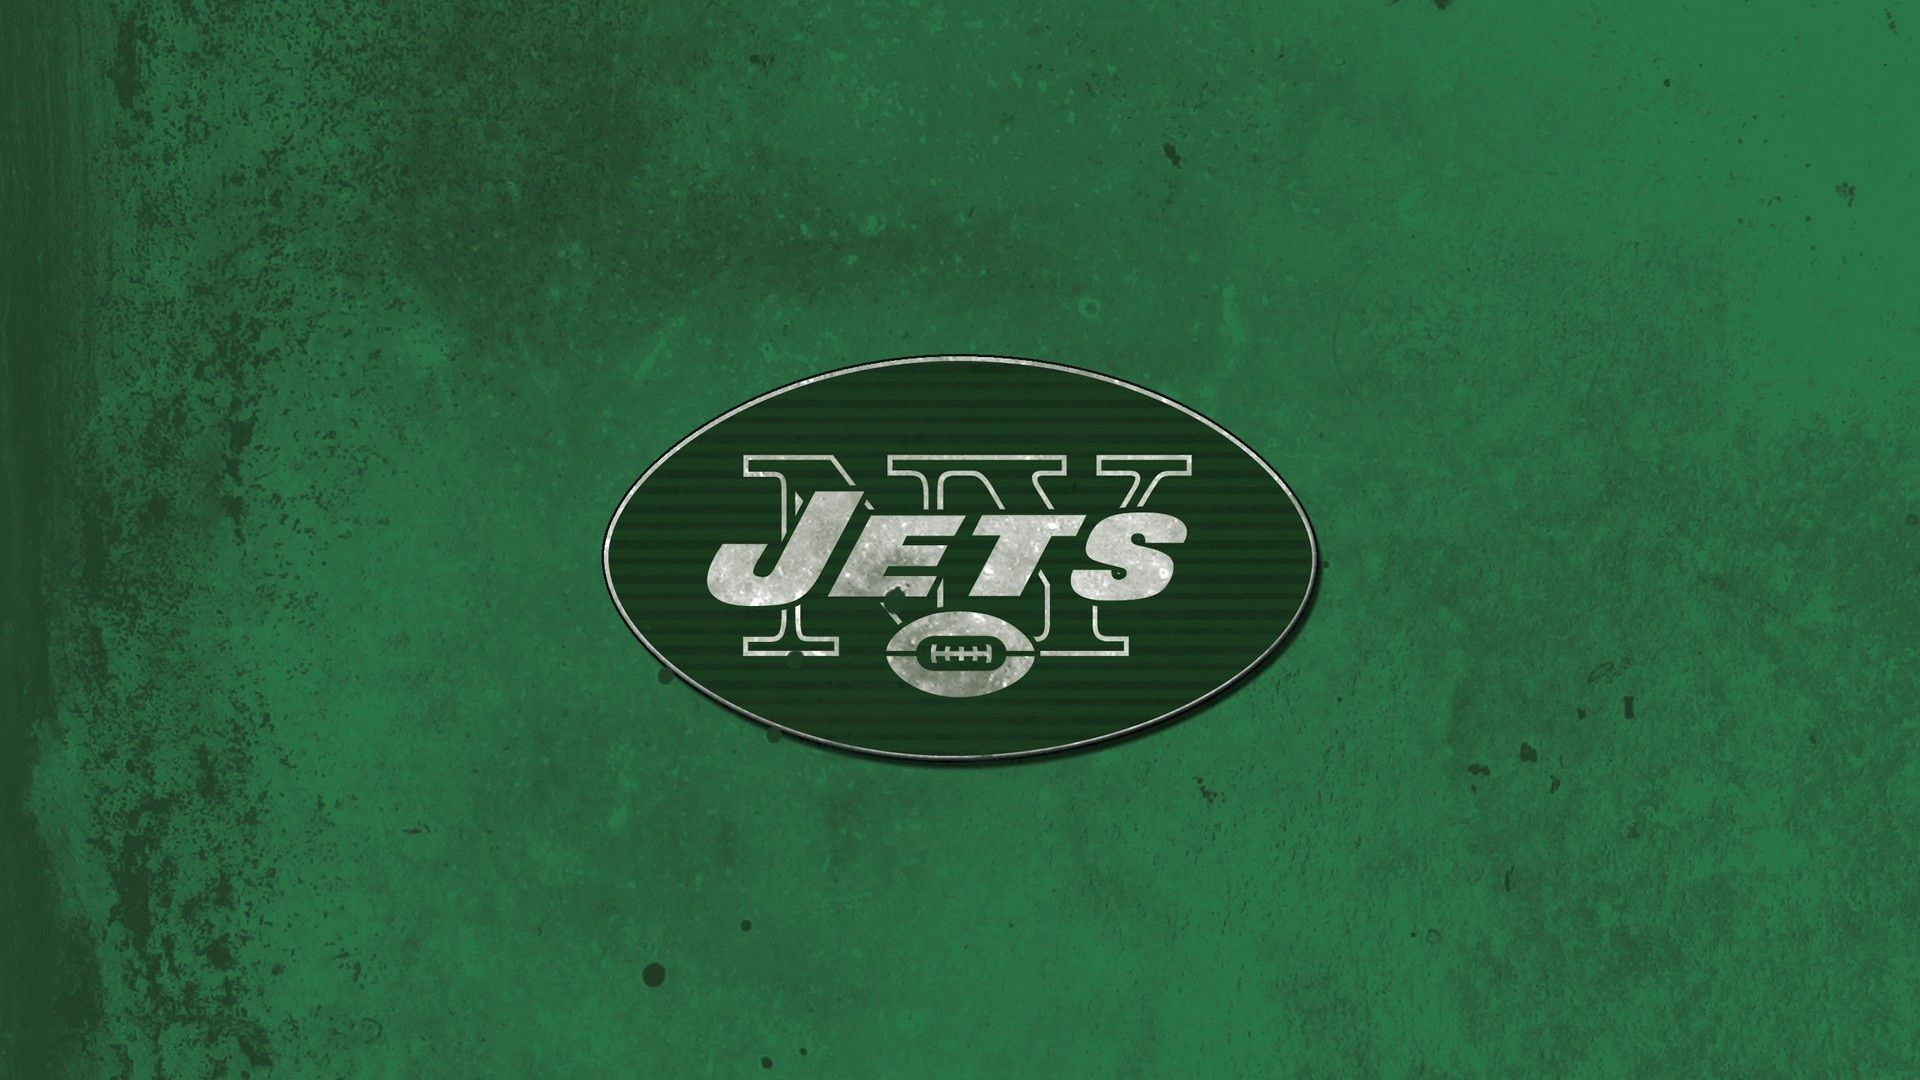 1920x1080 New York Jets Wallpaper HD 2022 NFL Football Wallpapers | Ny jets, New york jets, Nfl football wallpaper